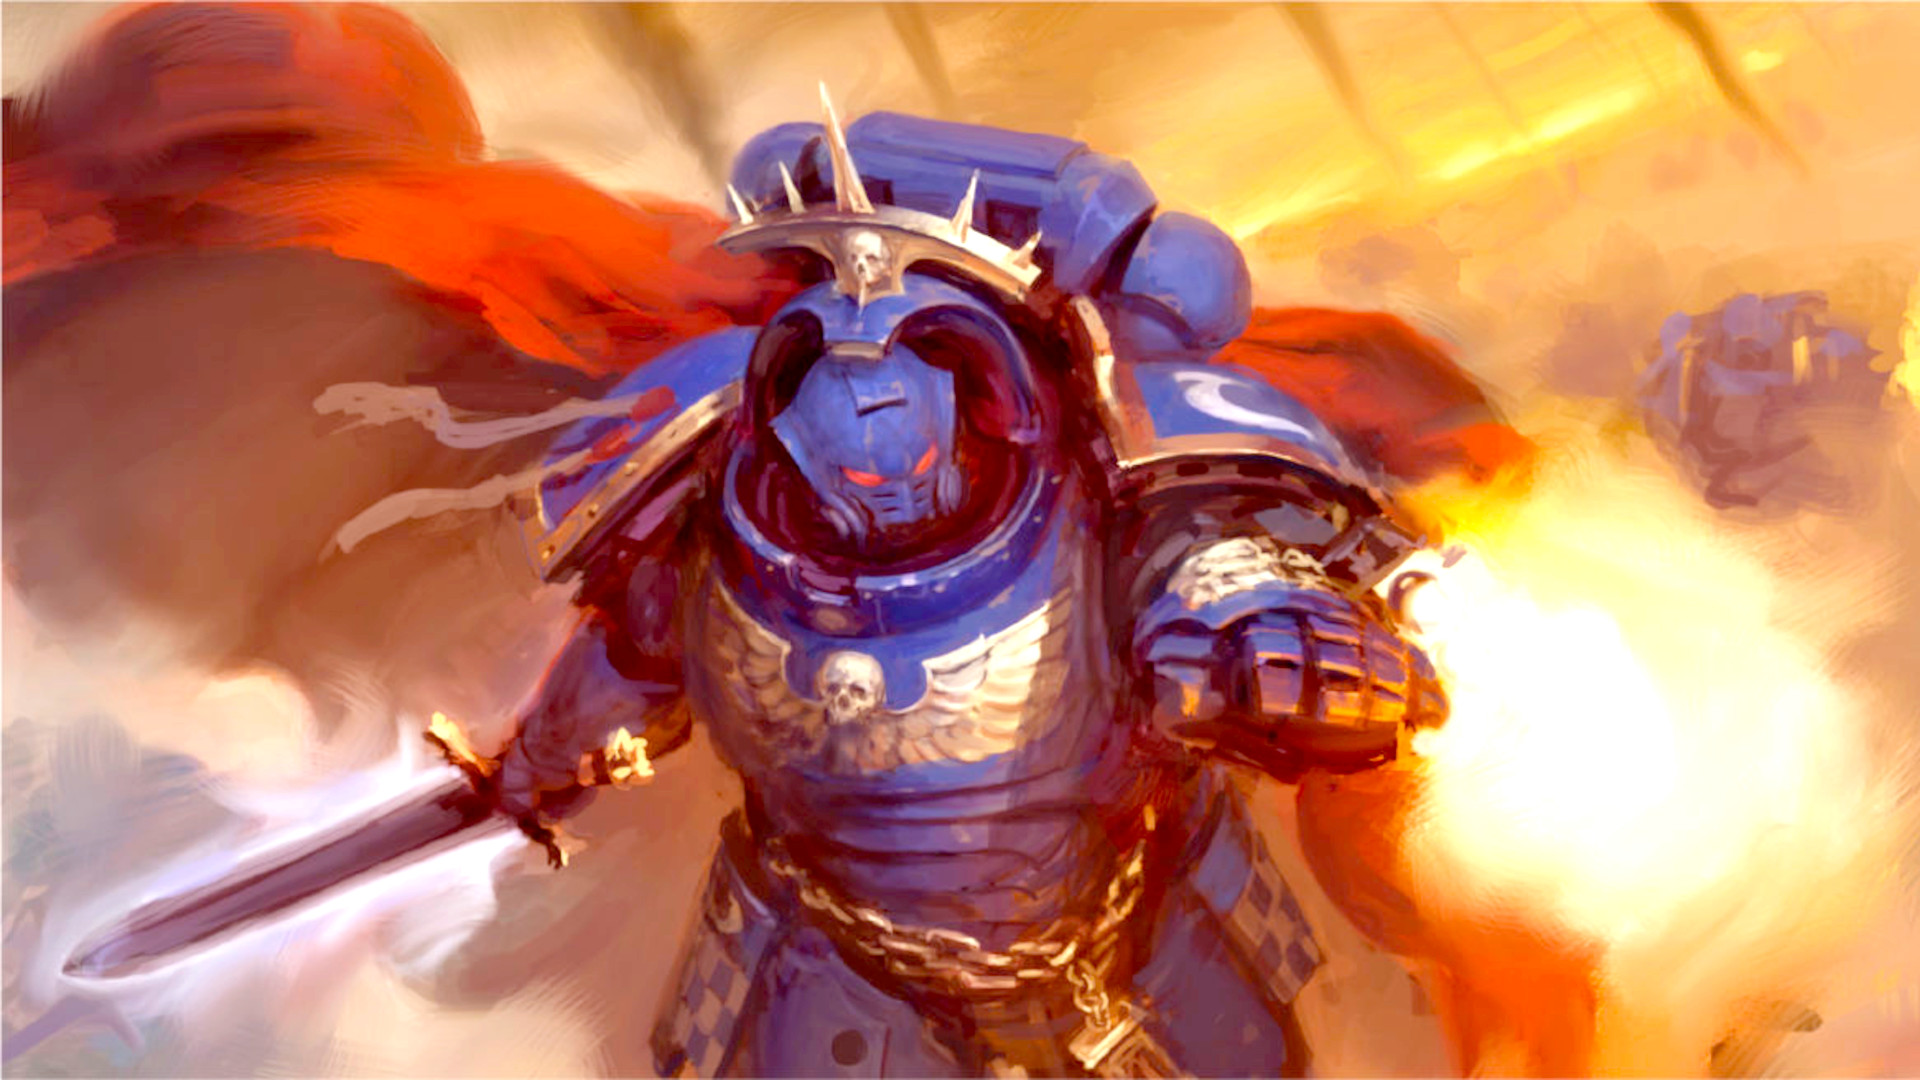 Warhammer 40,000 Faction Focus: Orks - Warhammer Community